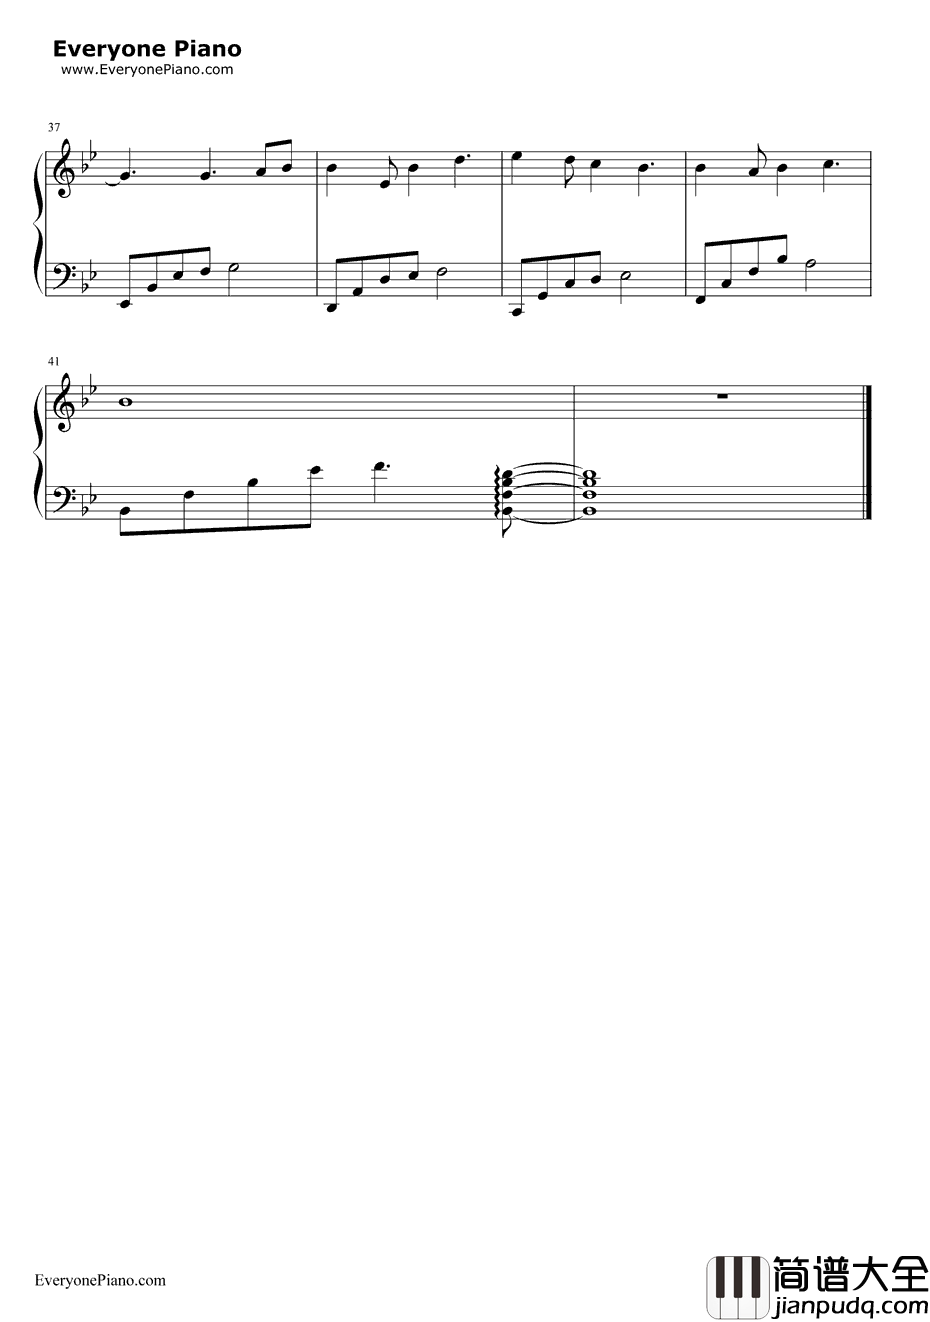 简单就好简单版钢琴谱_未知_EOP教学曲